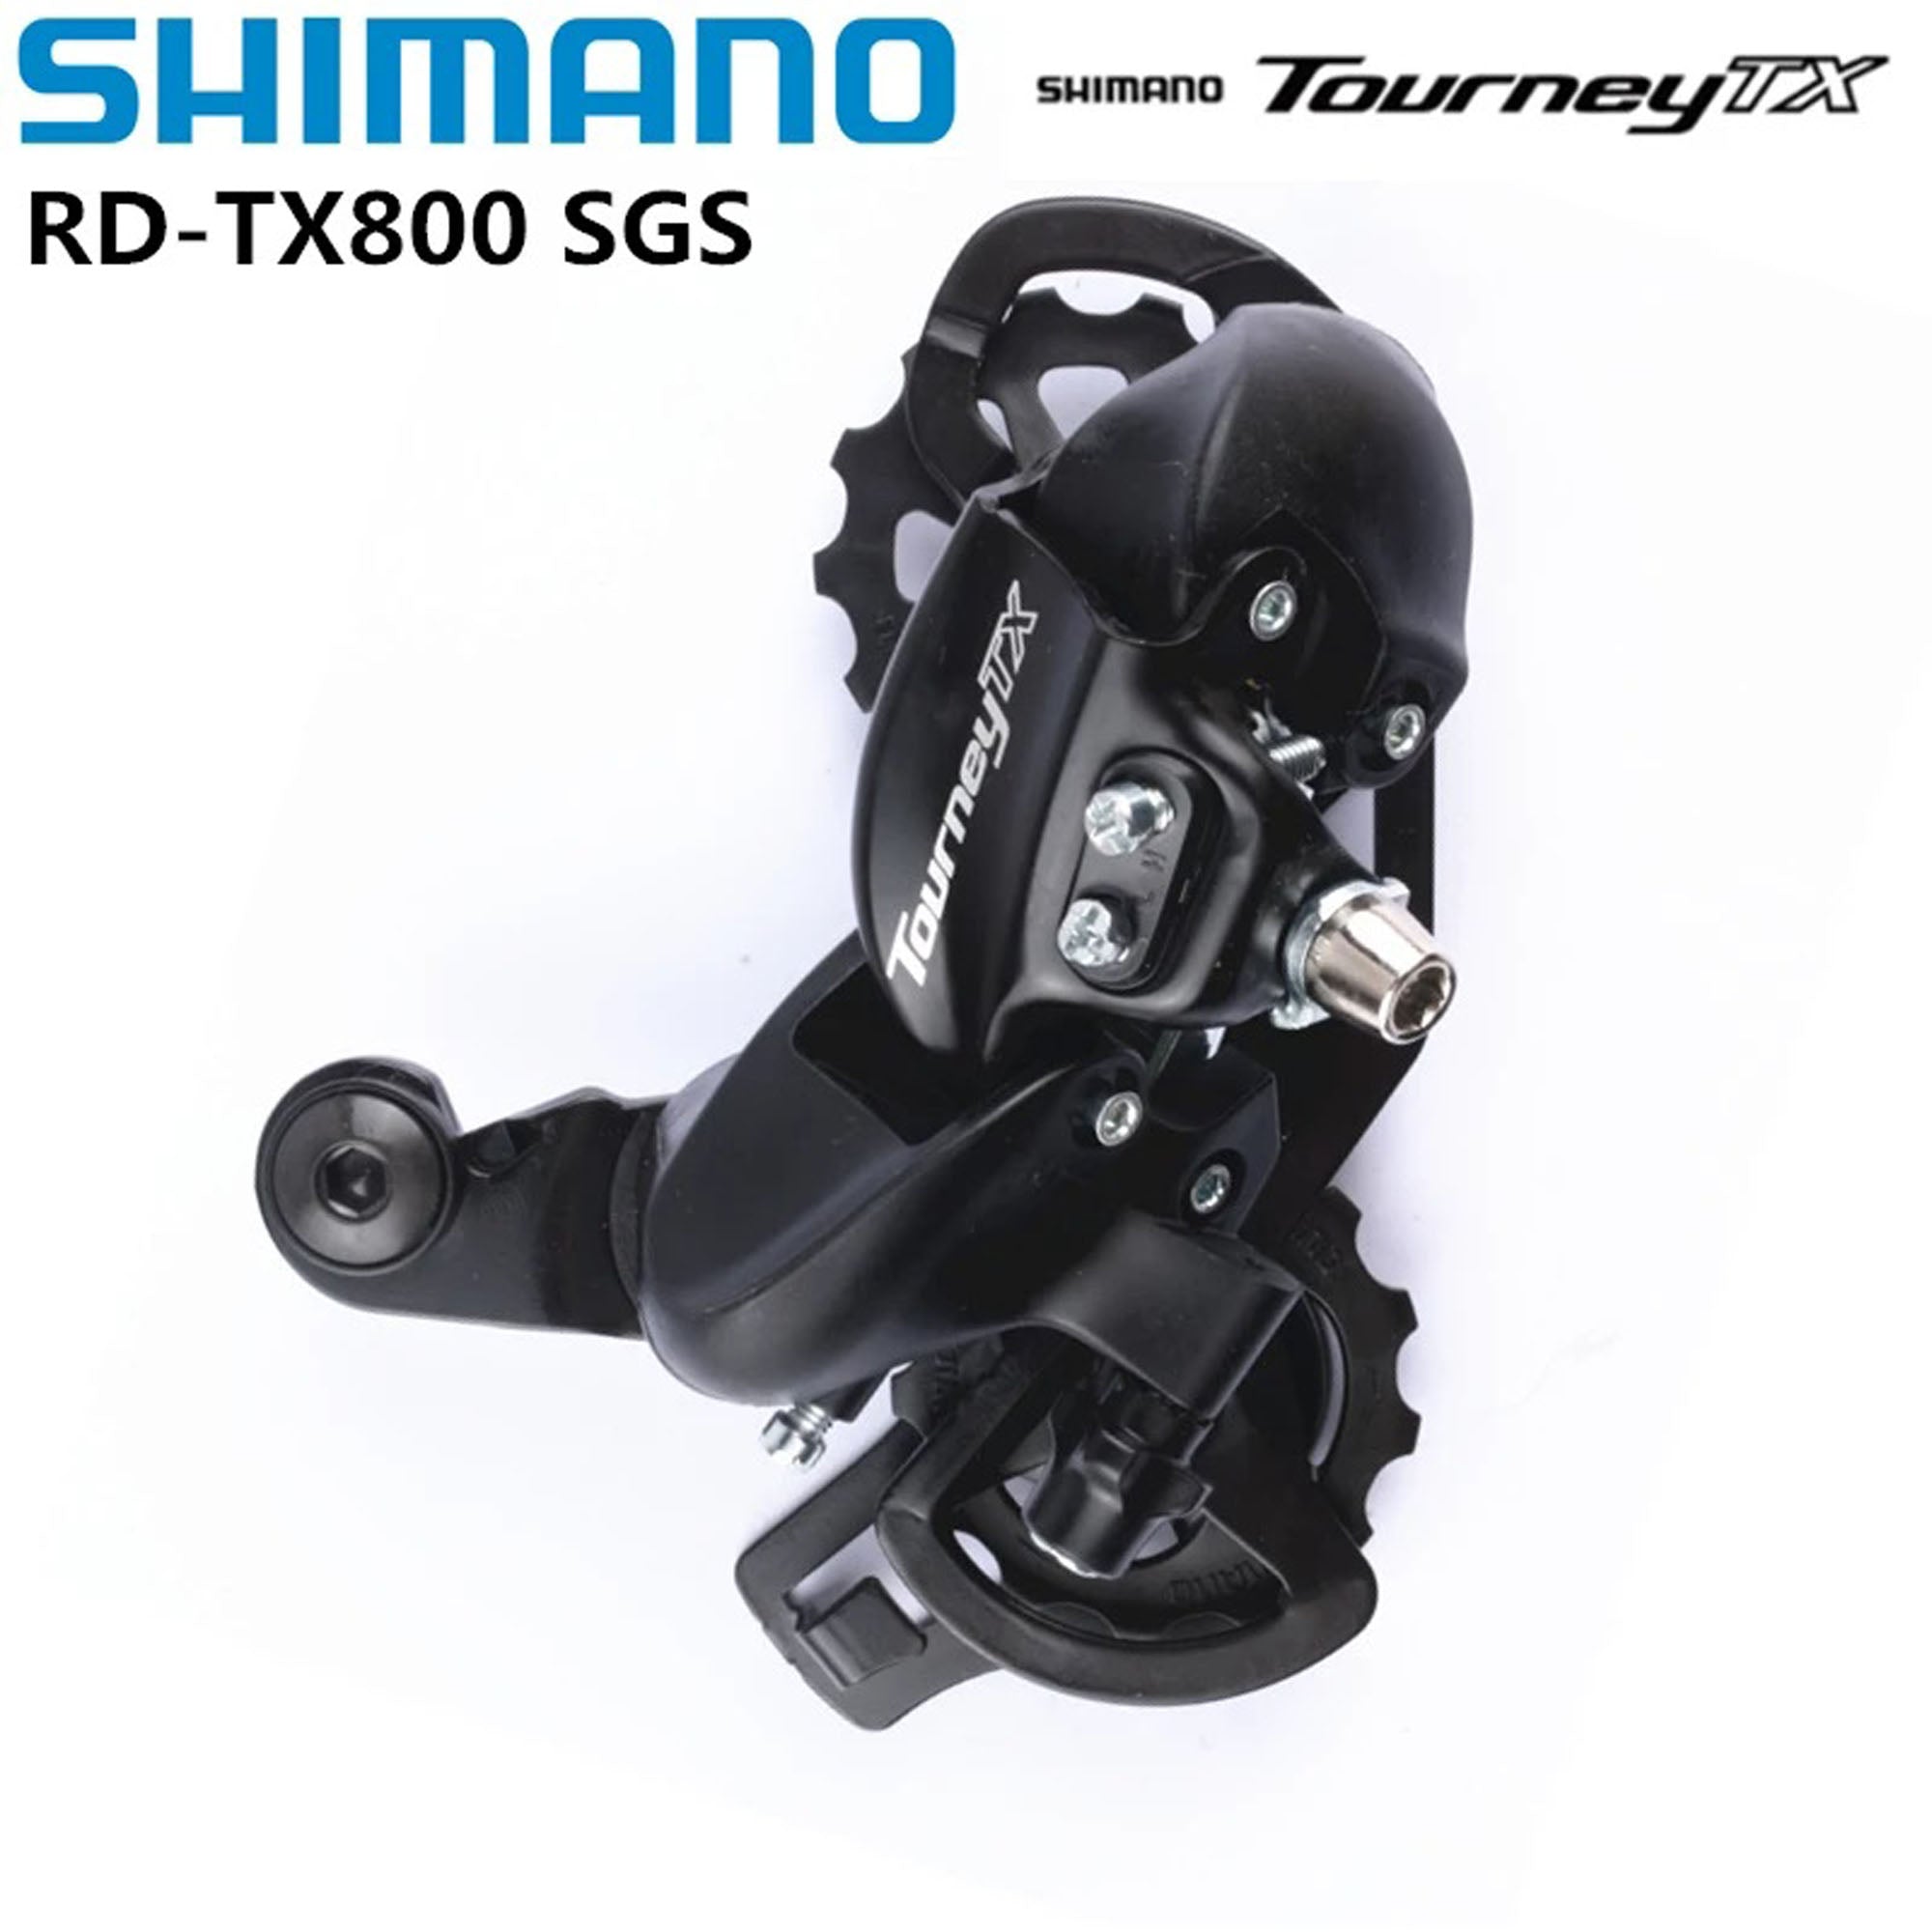 SHIMANO TOURNEY TX800 7/8 Speed Rear Derailleur - DerakBikes